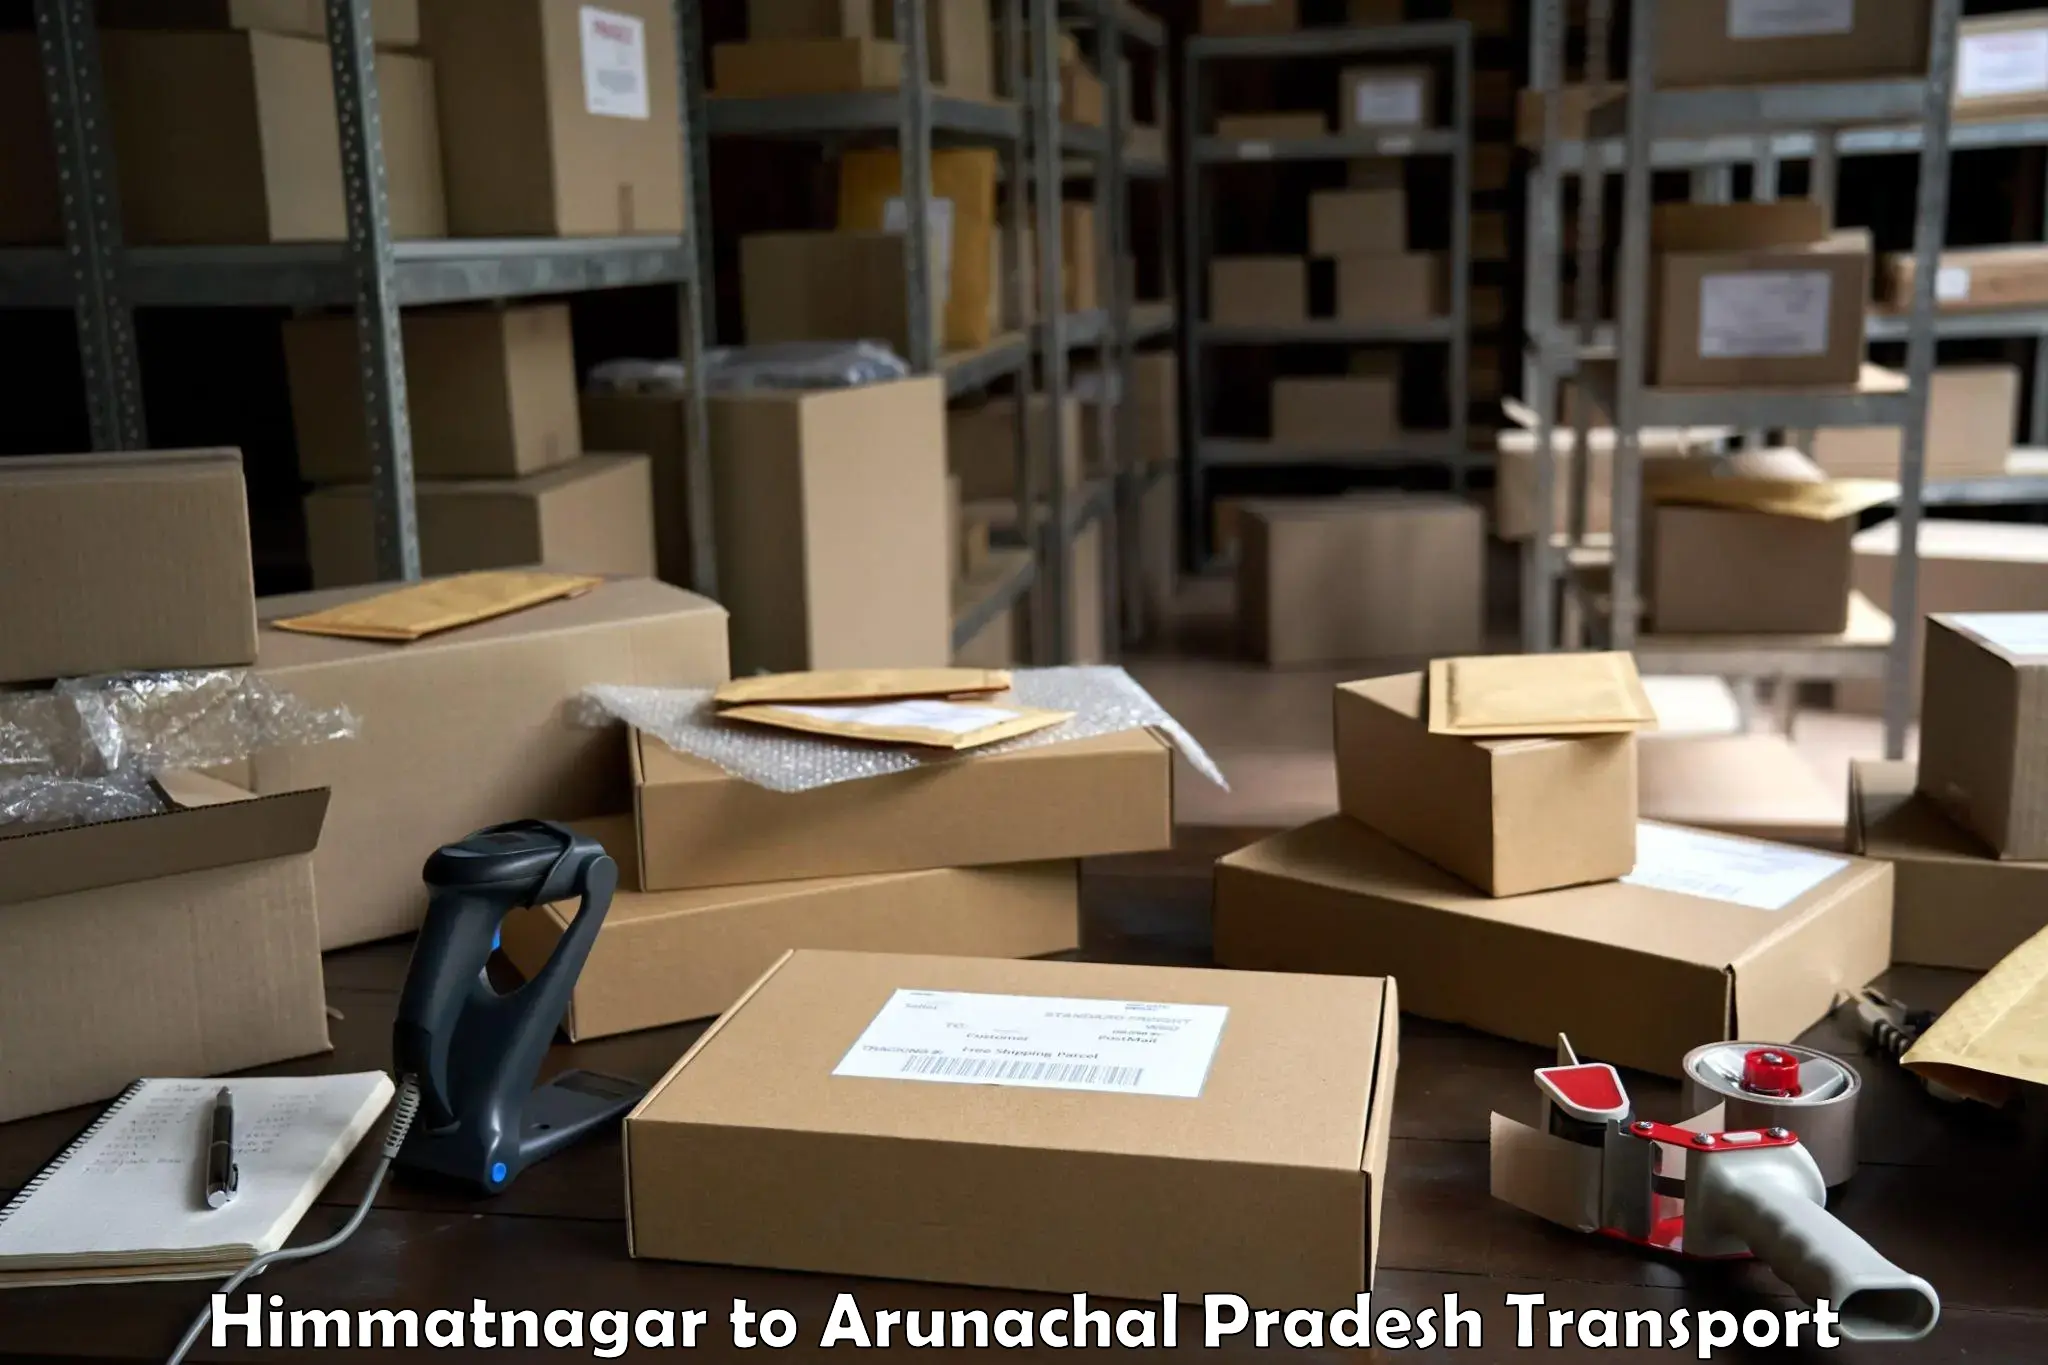 Road transport online services Himmatnagar to Arunachal Pradesh